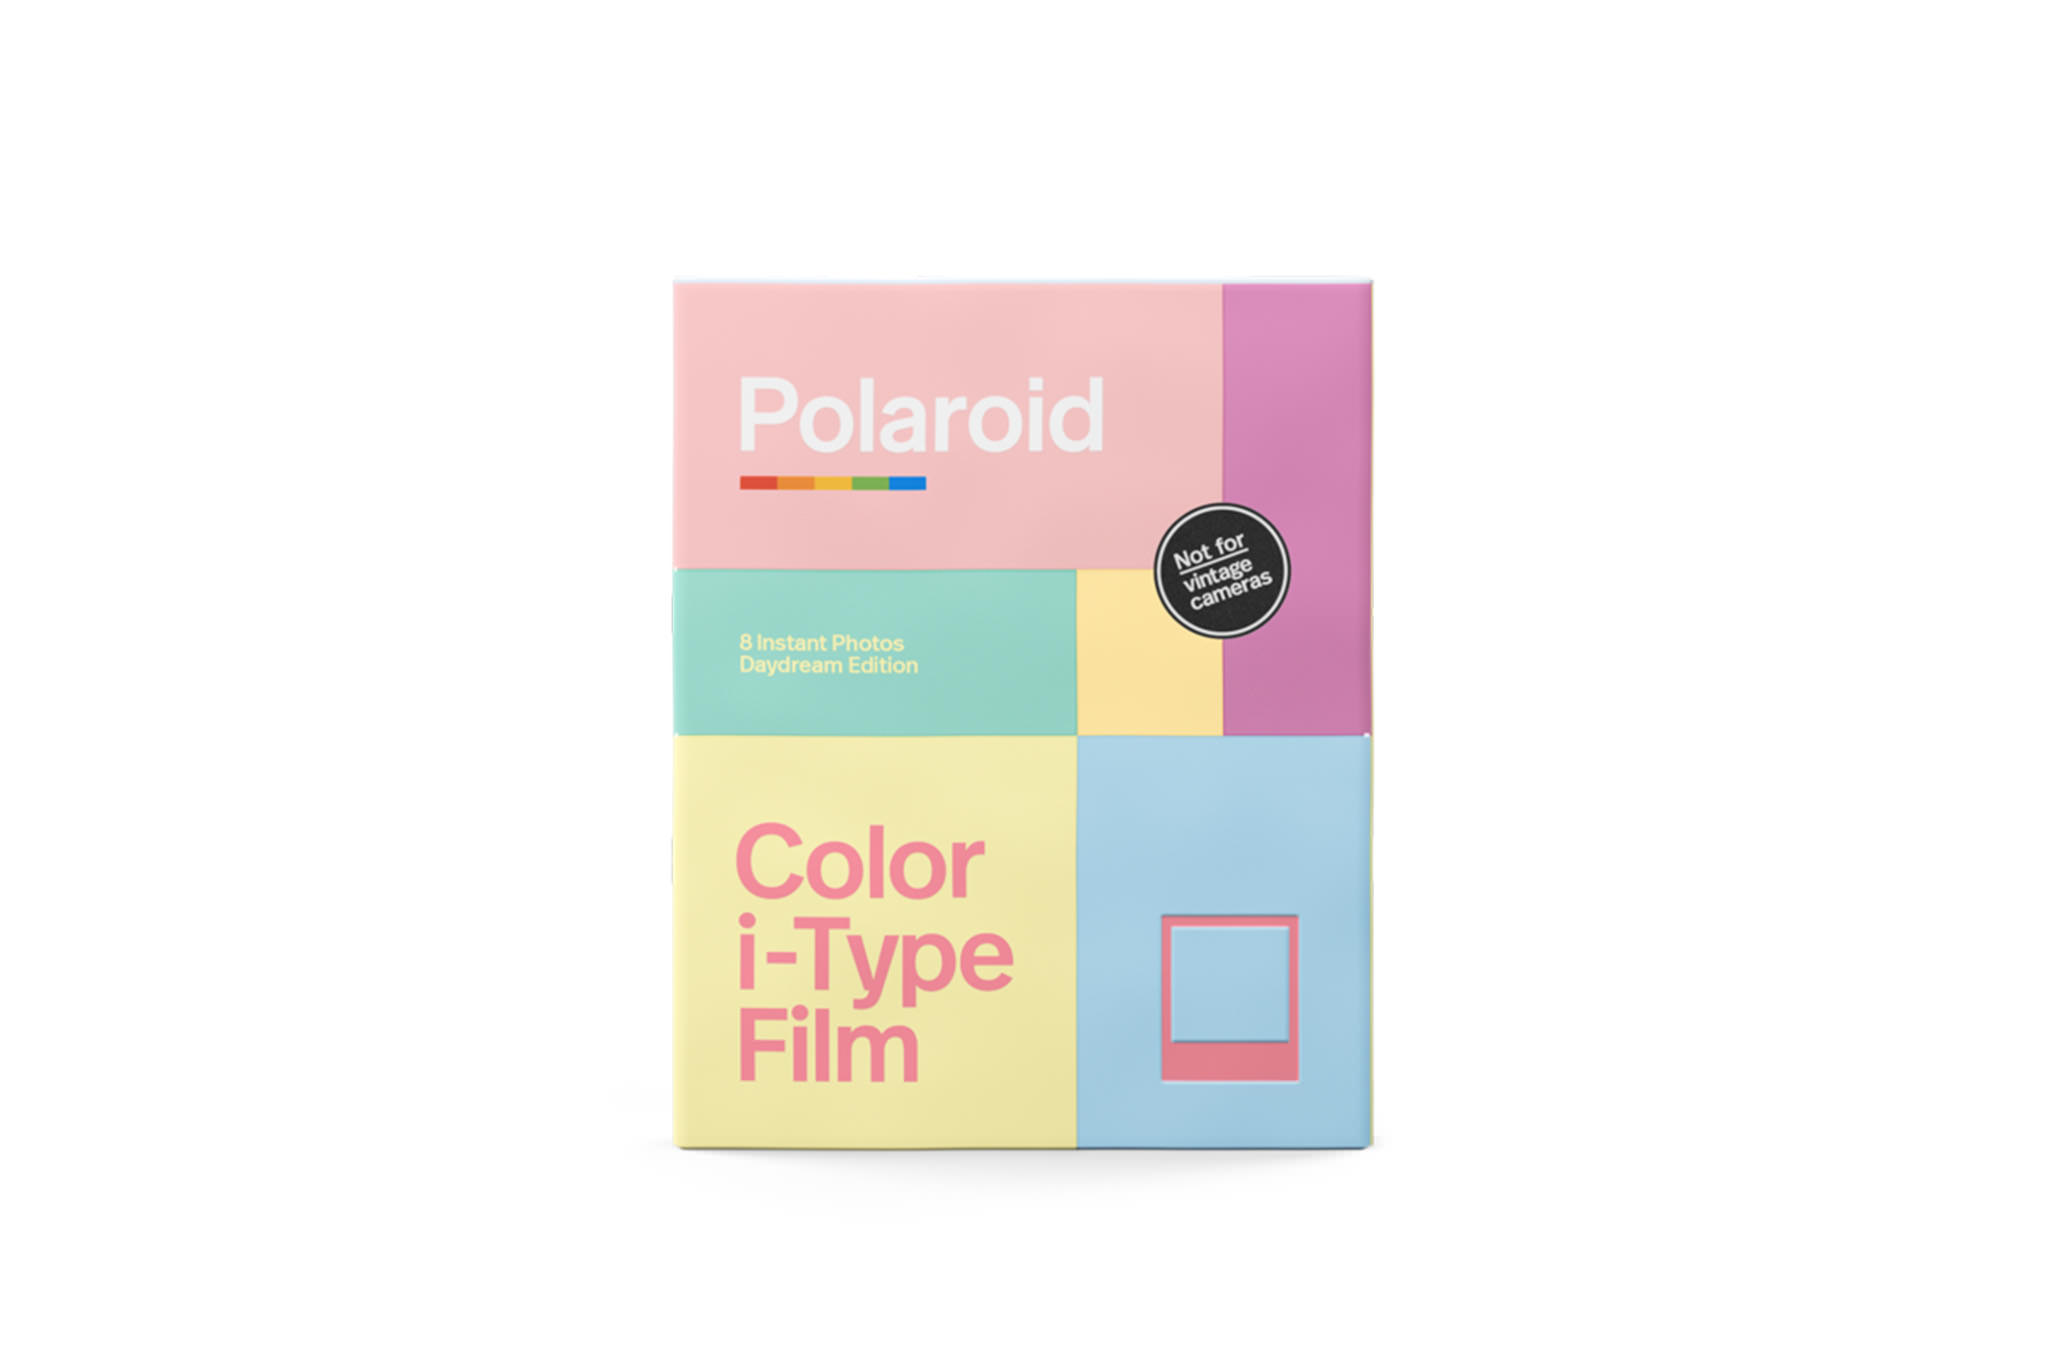 polaroid-originals-color-i-type-film-daydream-edition